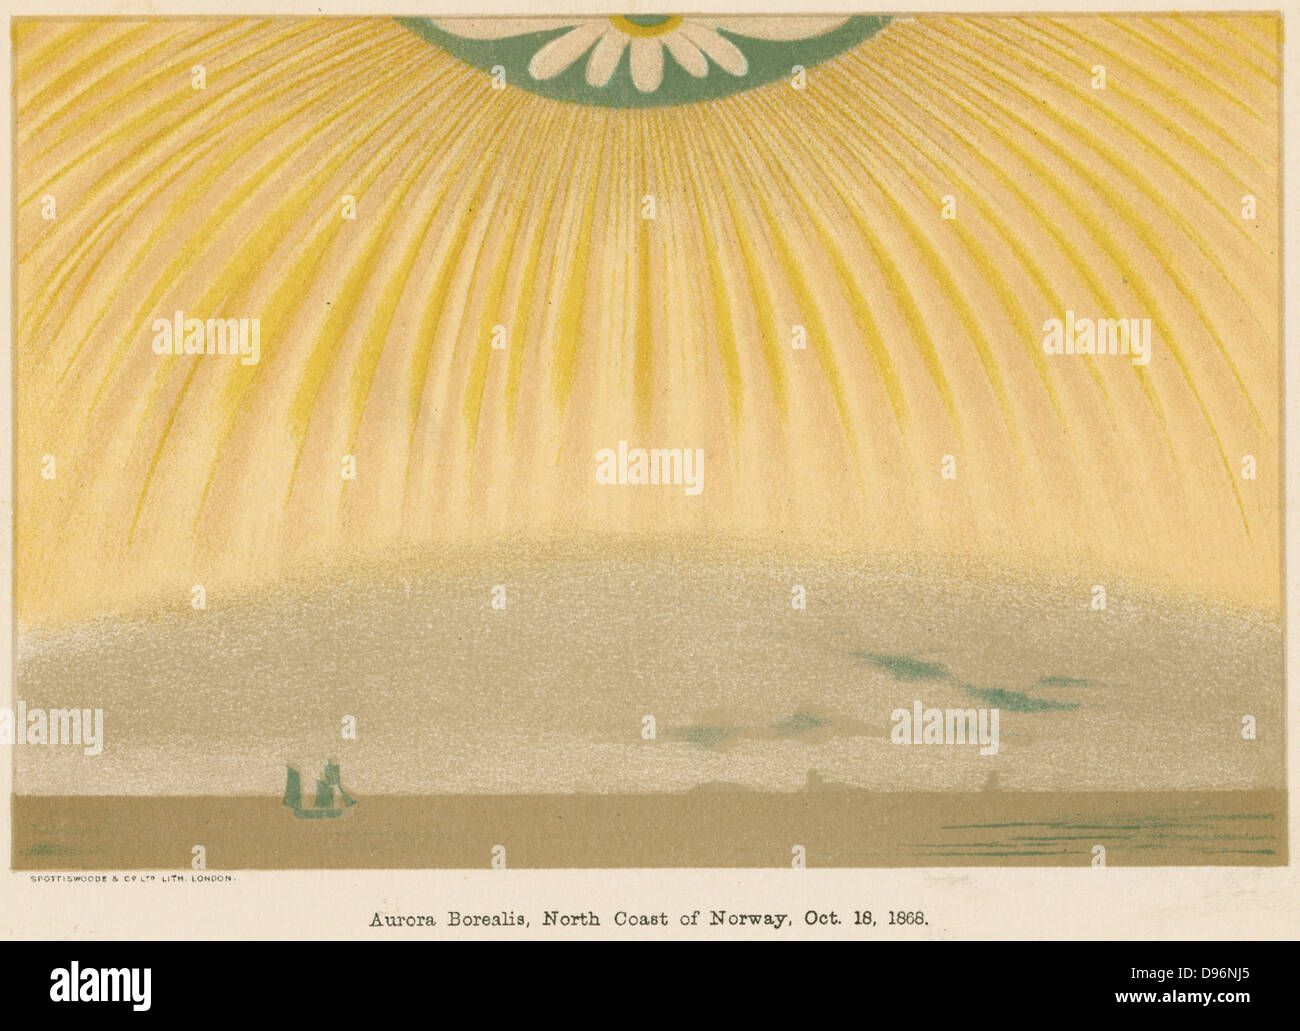 Aurora Borealis oder Polarlichter beobachtet aus Nordnorwegen, 10. Oktober 1868. Dieses leuchtende atmosphärische elektrische Erscheinung ist besonders spektakulär in der Zeit der Sonnenfleck max. Von "Elementare Abhandlung über Physik', ein ganot, (London, 1906). Chromolithograph. Stockfoto